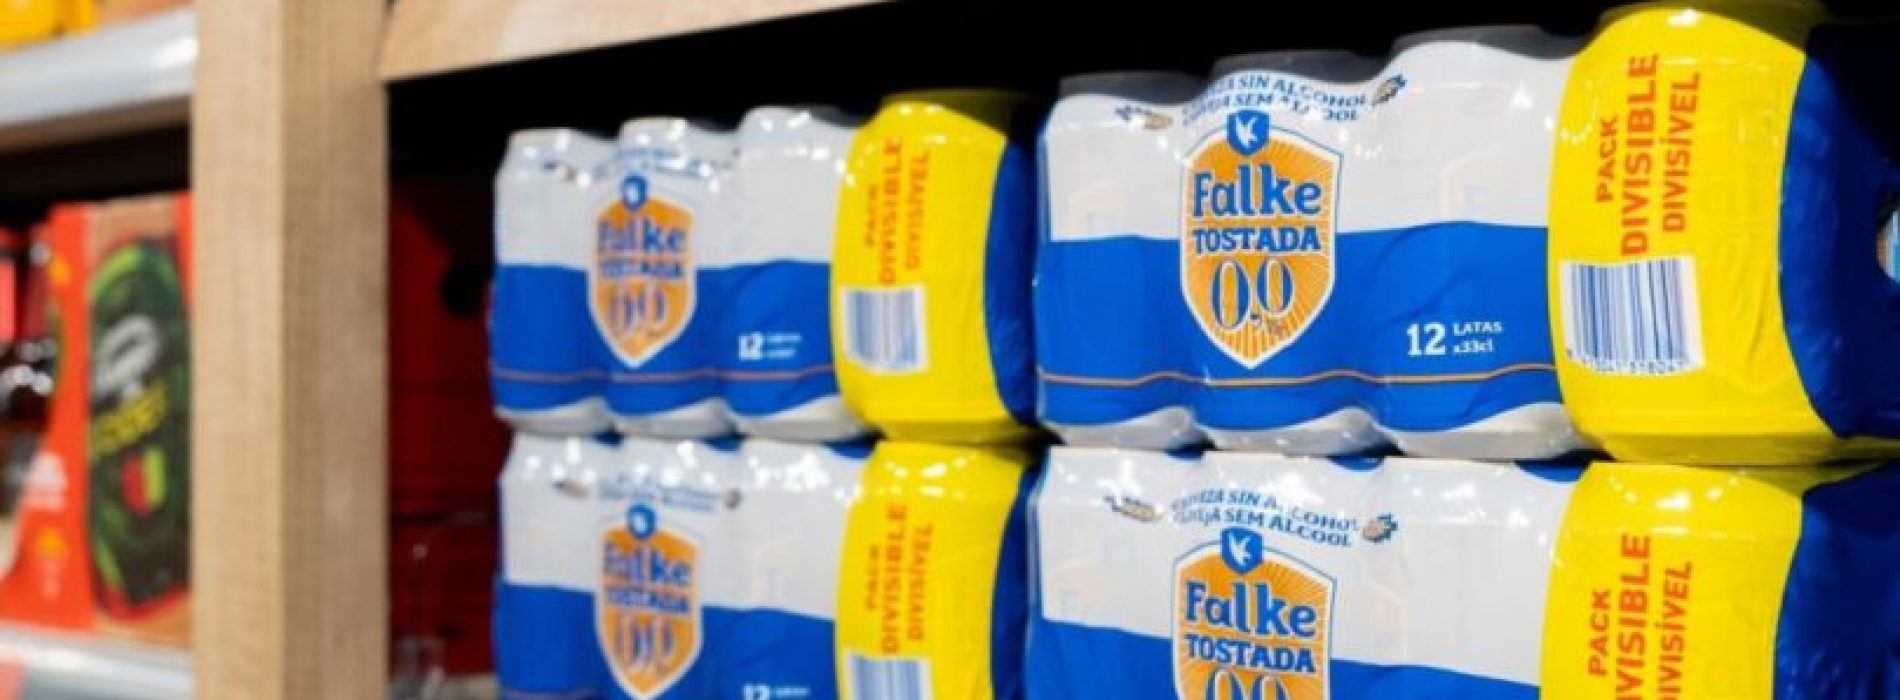 Mercadona amplia linha de cervejas com Falke Tostada 0,0%